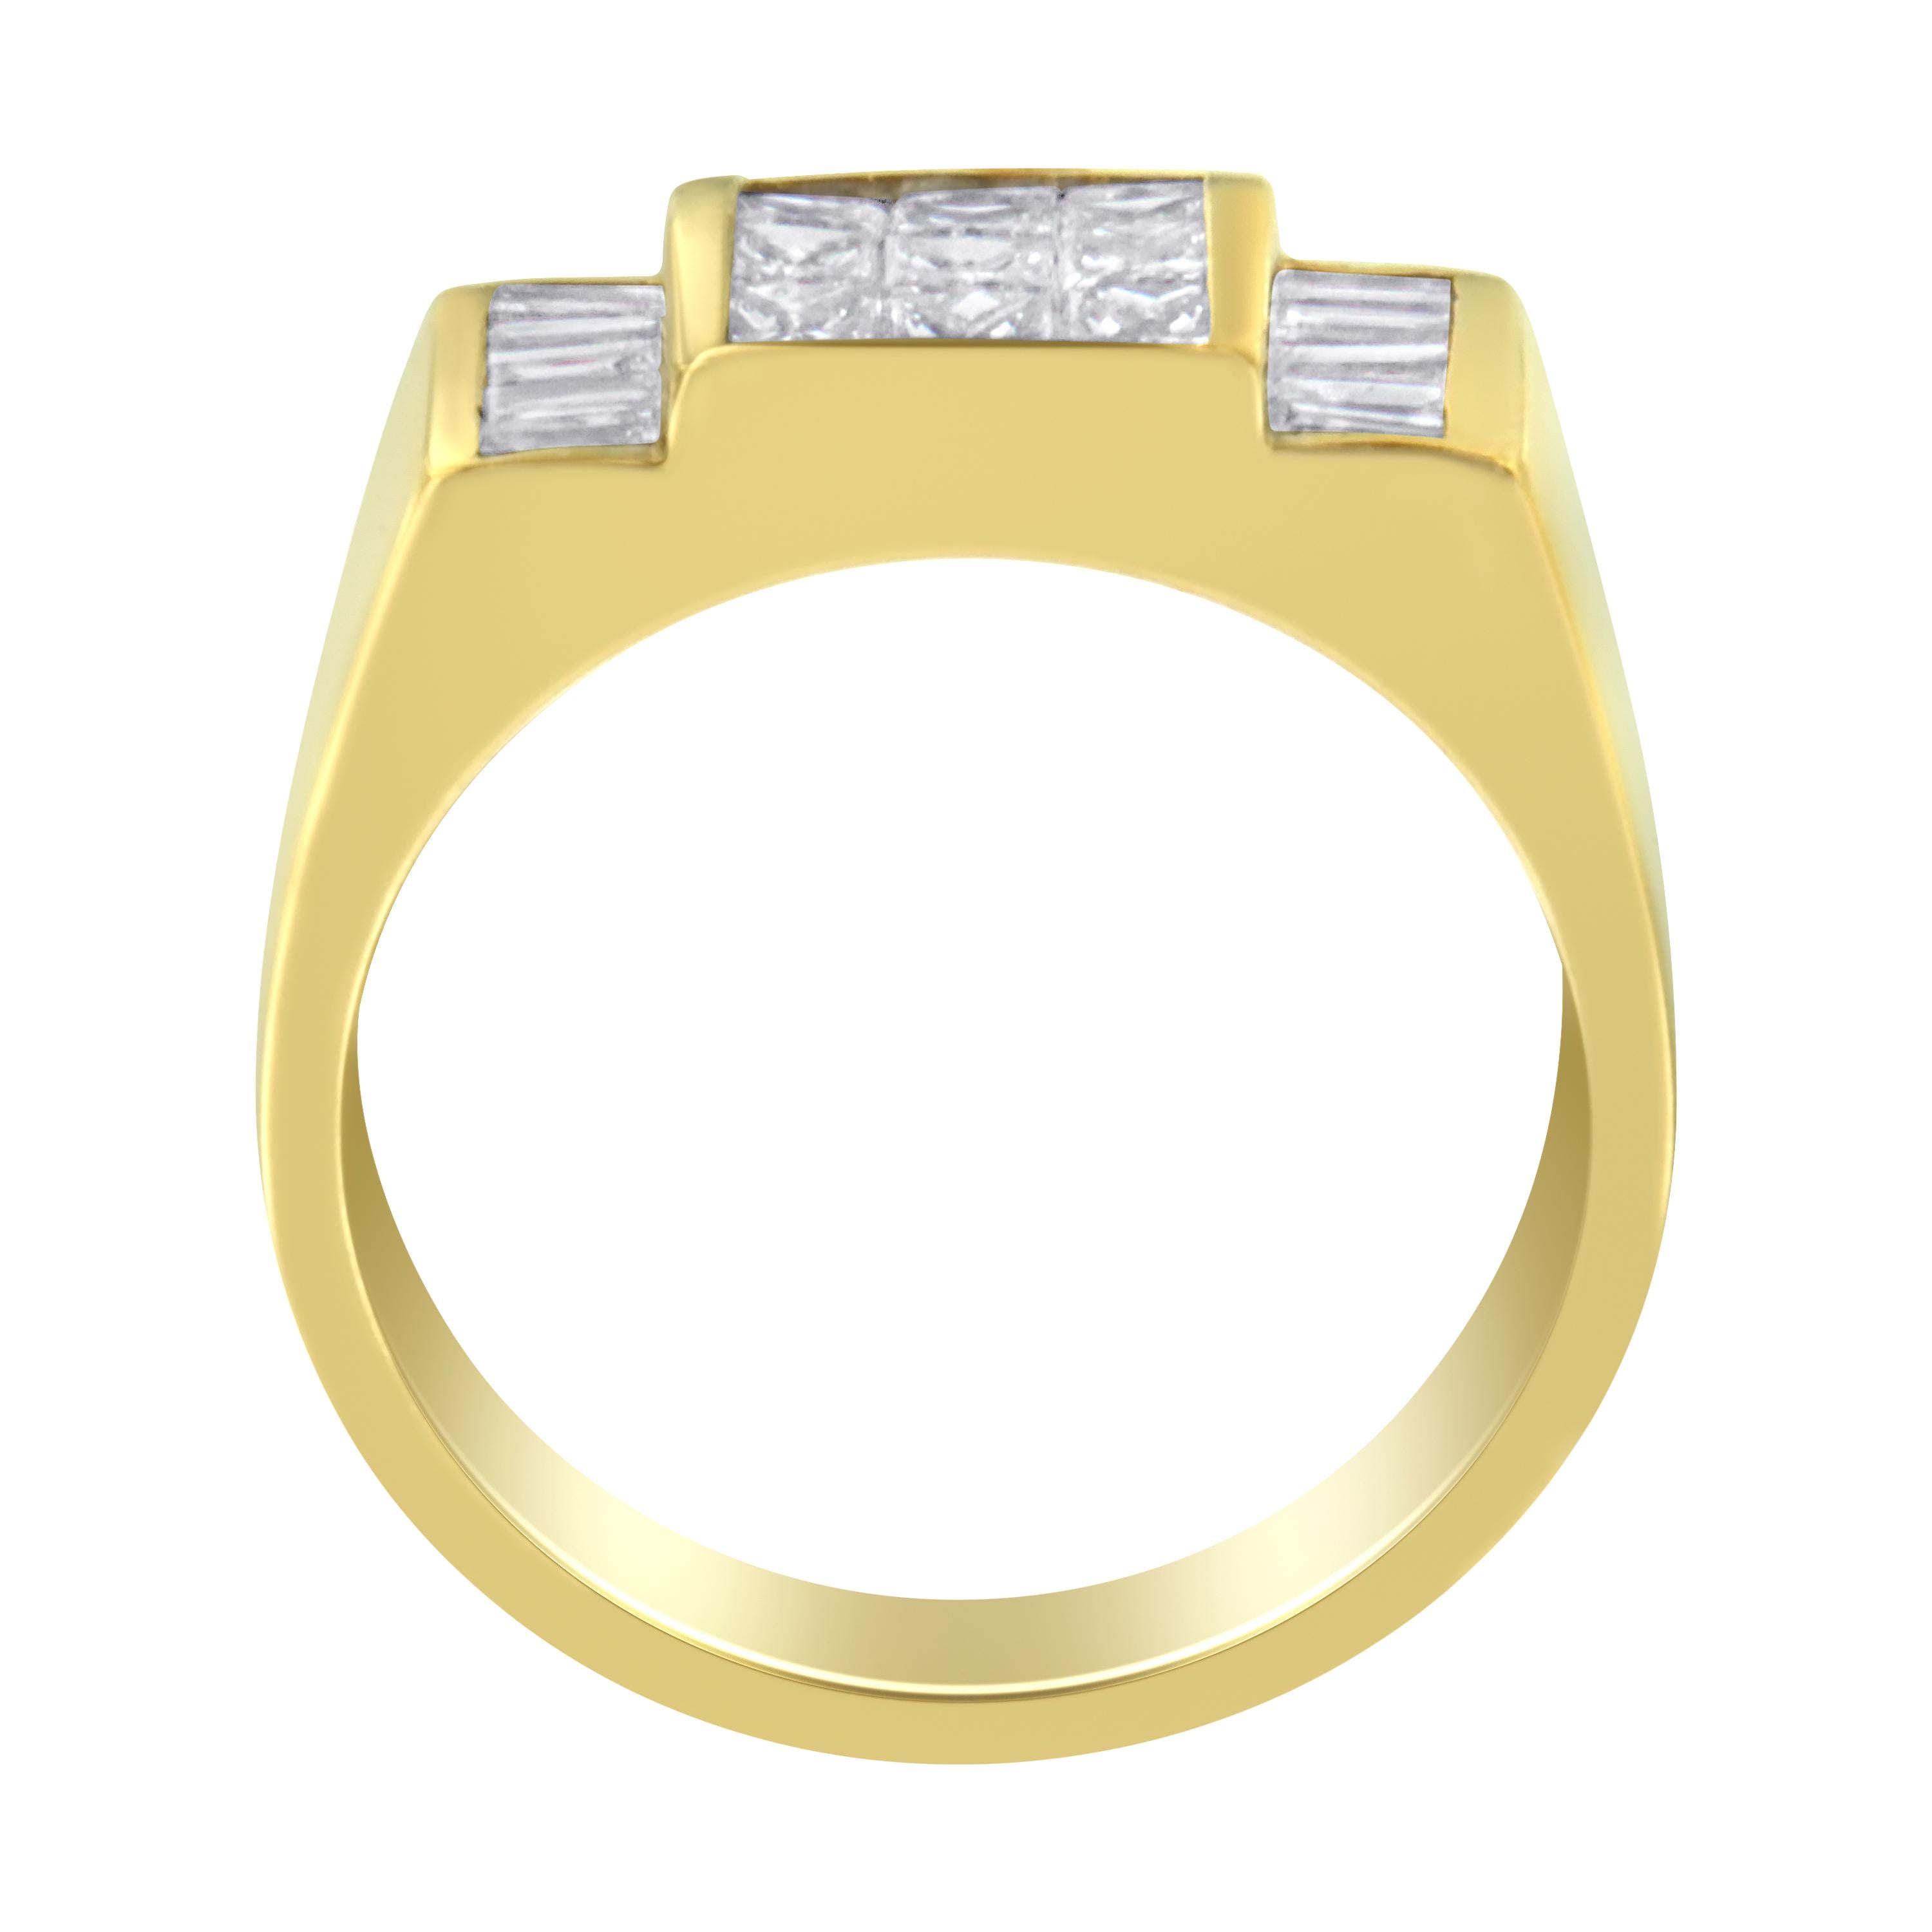 Modern 14k Yellow Gold 2 1/5 Carat Diamond Ring